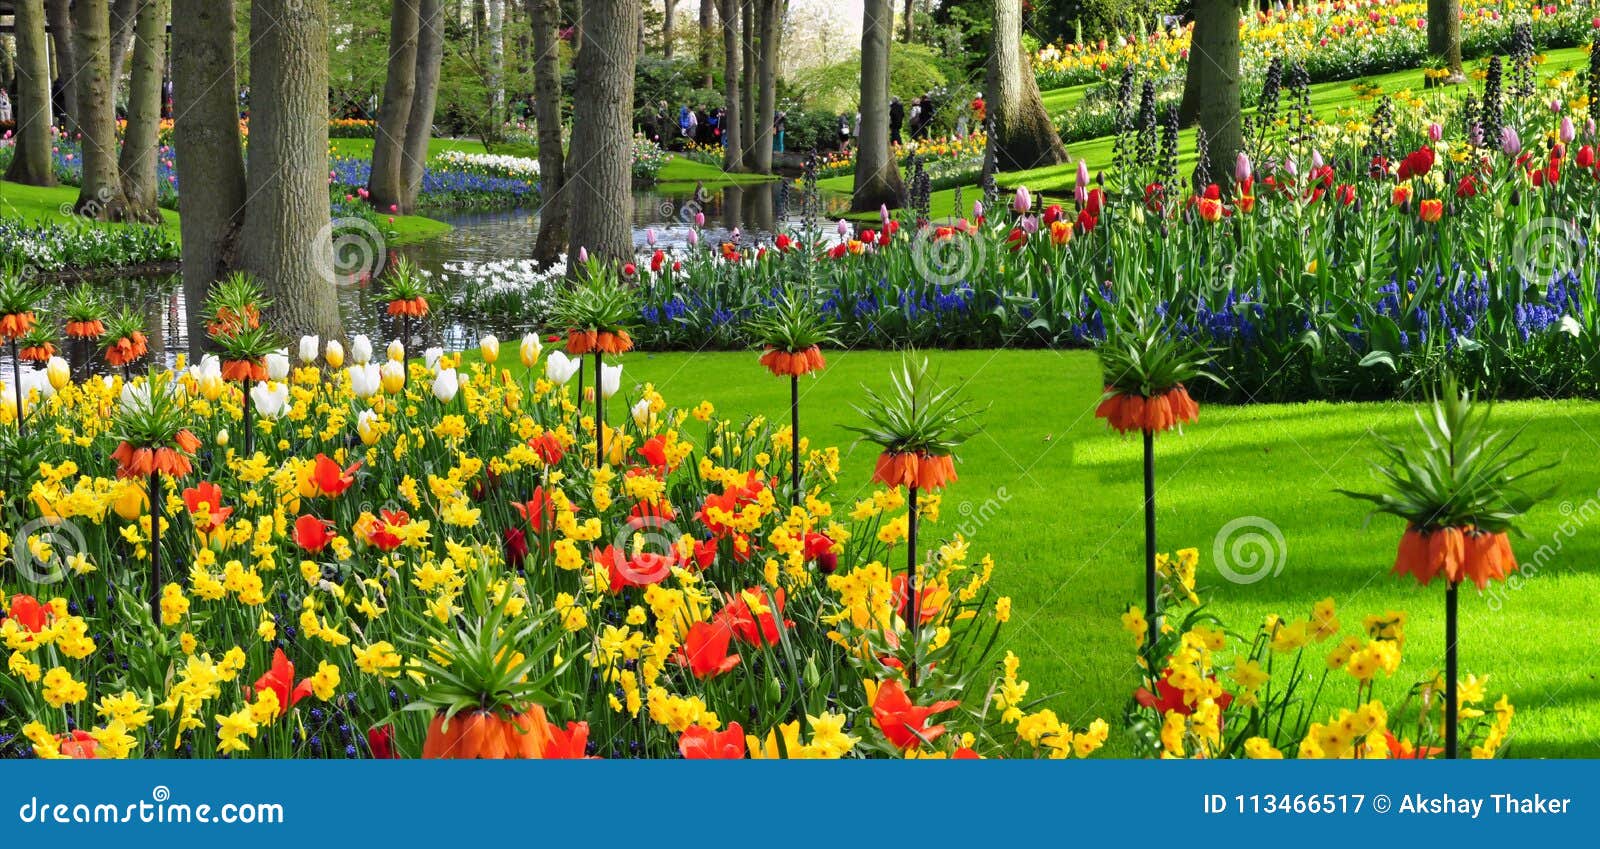 El Jardin De Keukenhof Conocido Como El Jardin De Europa Es Uno De Los Jardines De Flores Mas Grandes Del S Del Mundo Situado Imagen De Archivo Imagen De Mundo